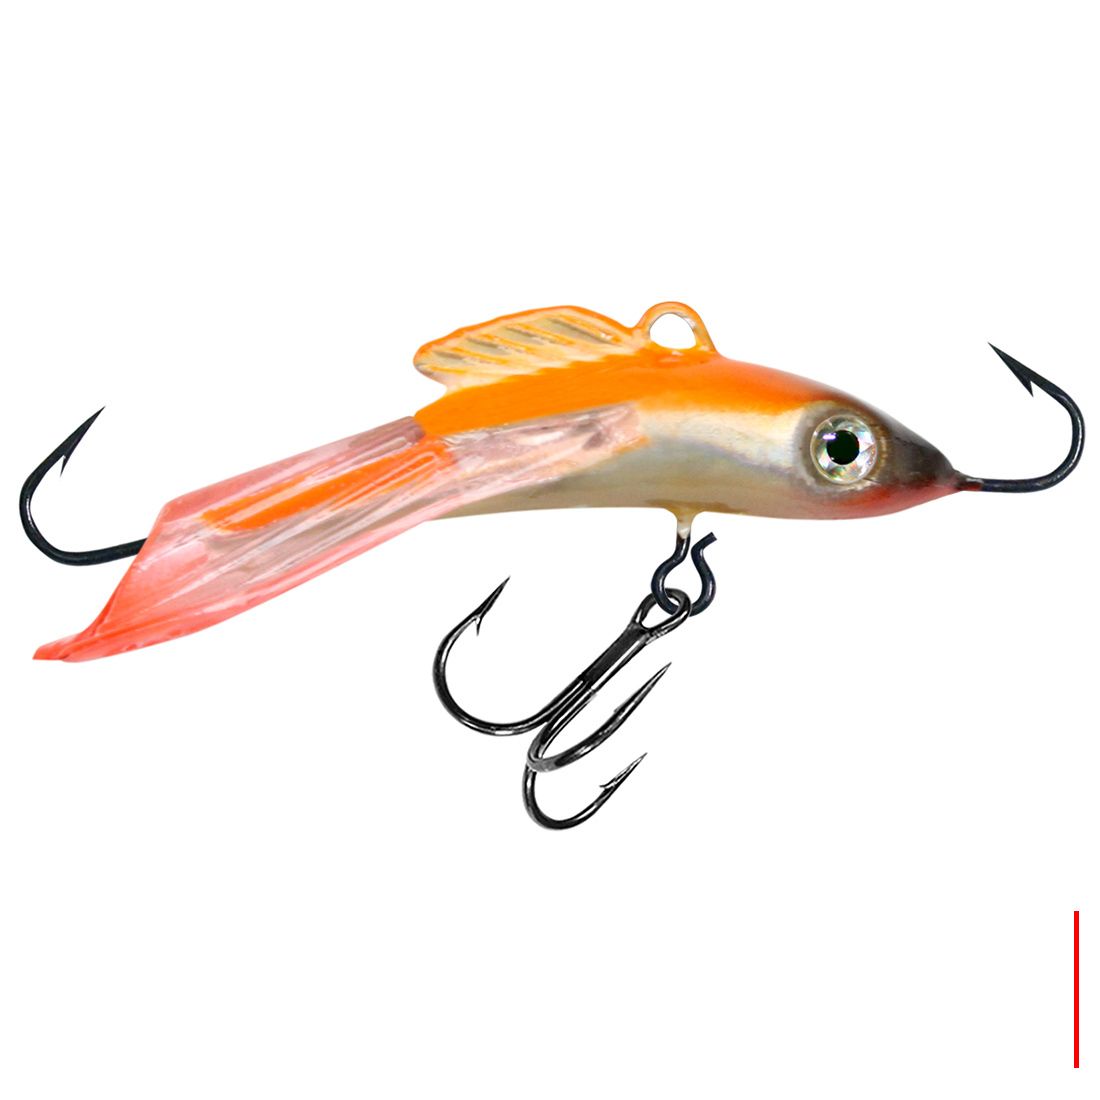 Балансир для рыбалки AQUA HOPPER-3D 47mm цвет 102 оранжевая спинка, 1 штука